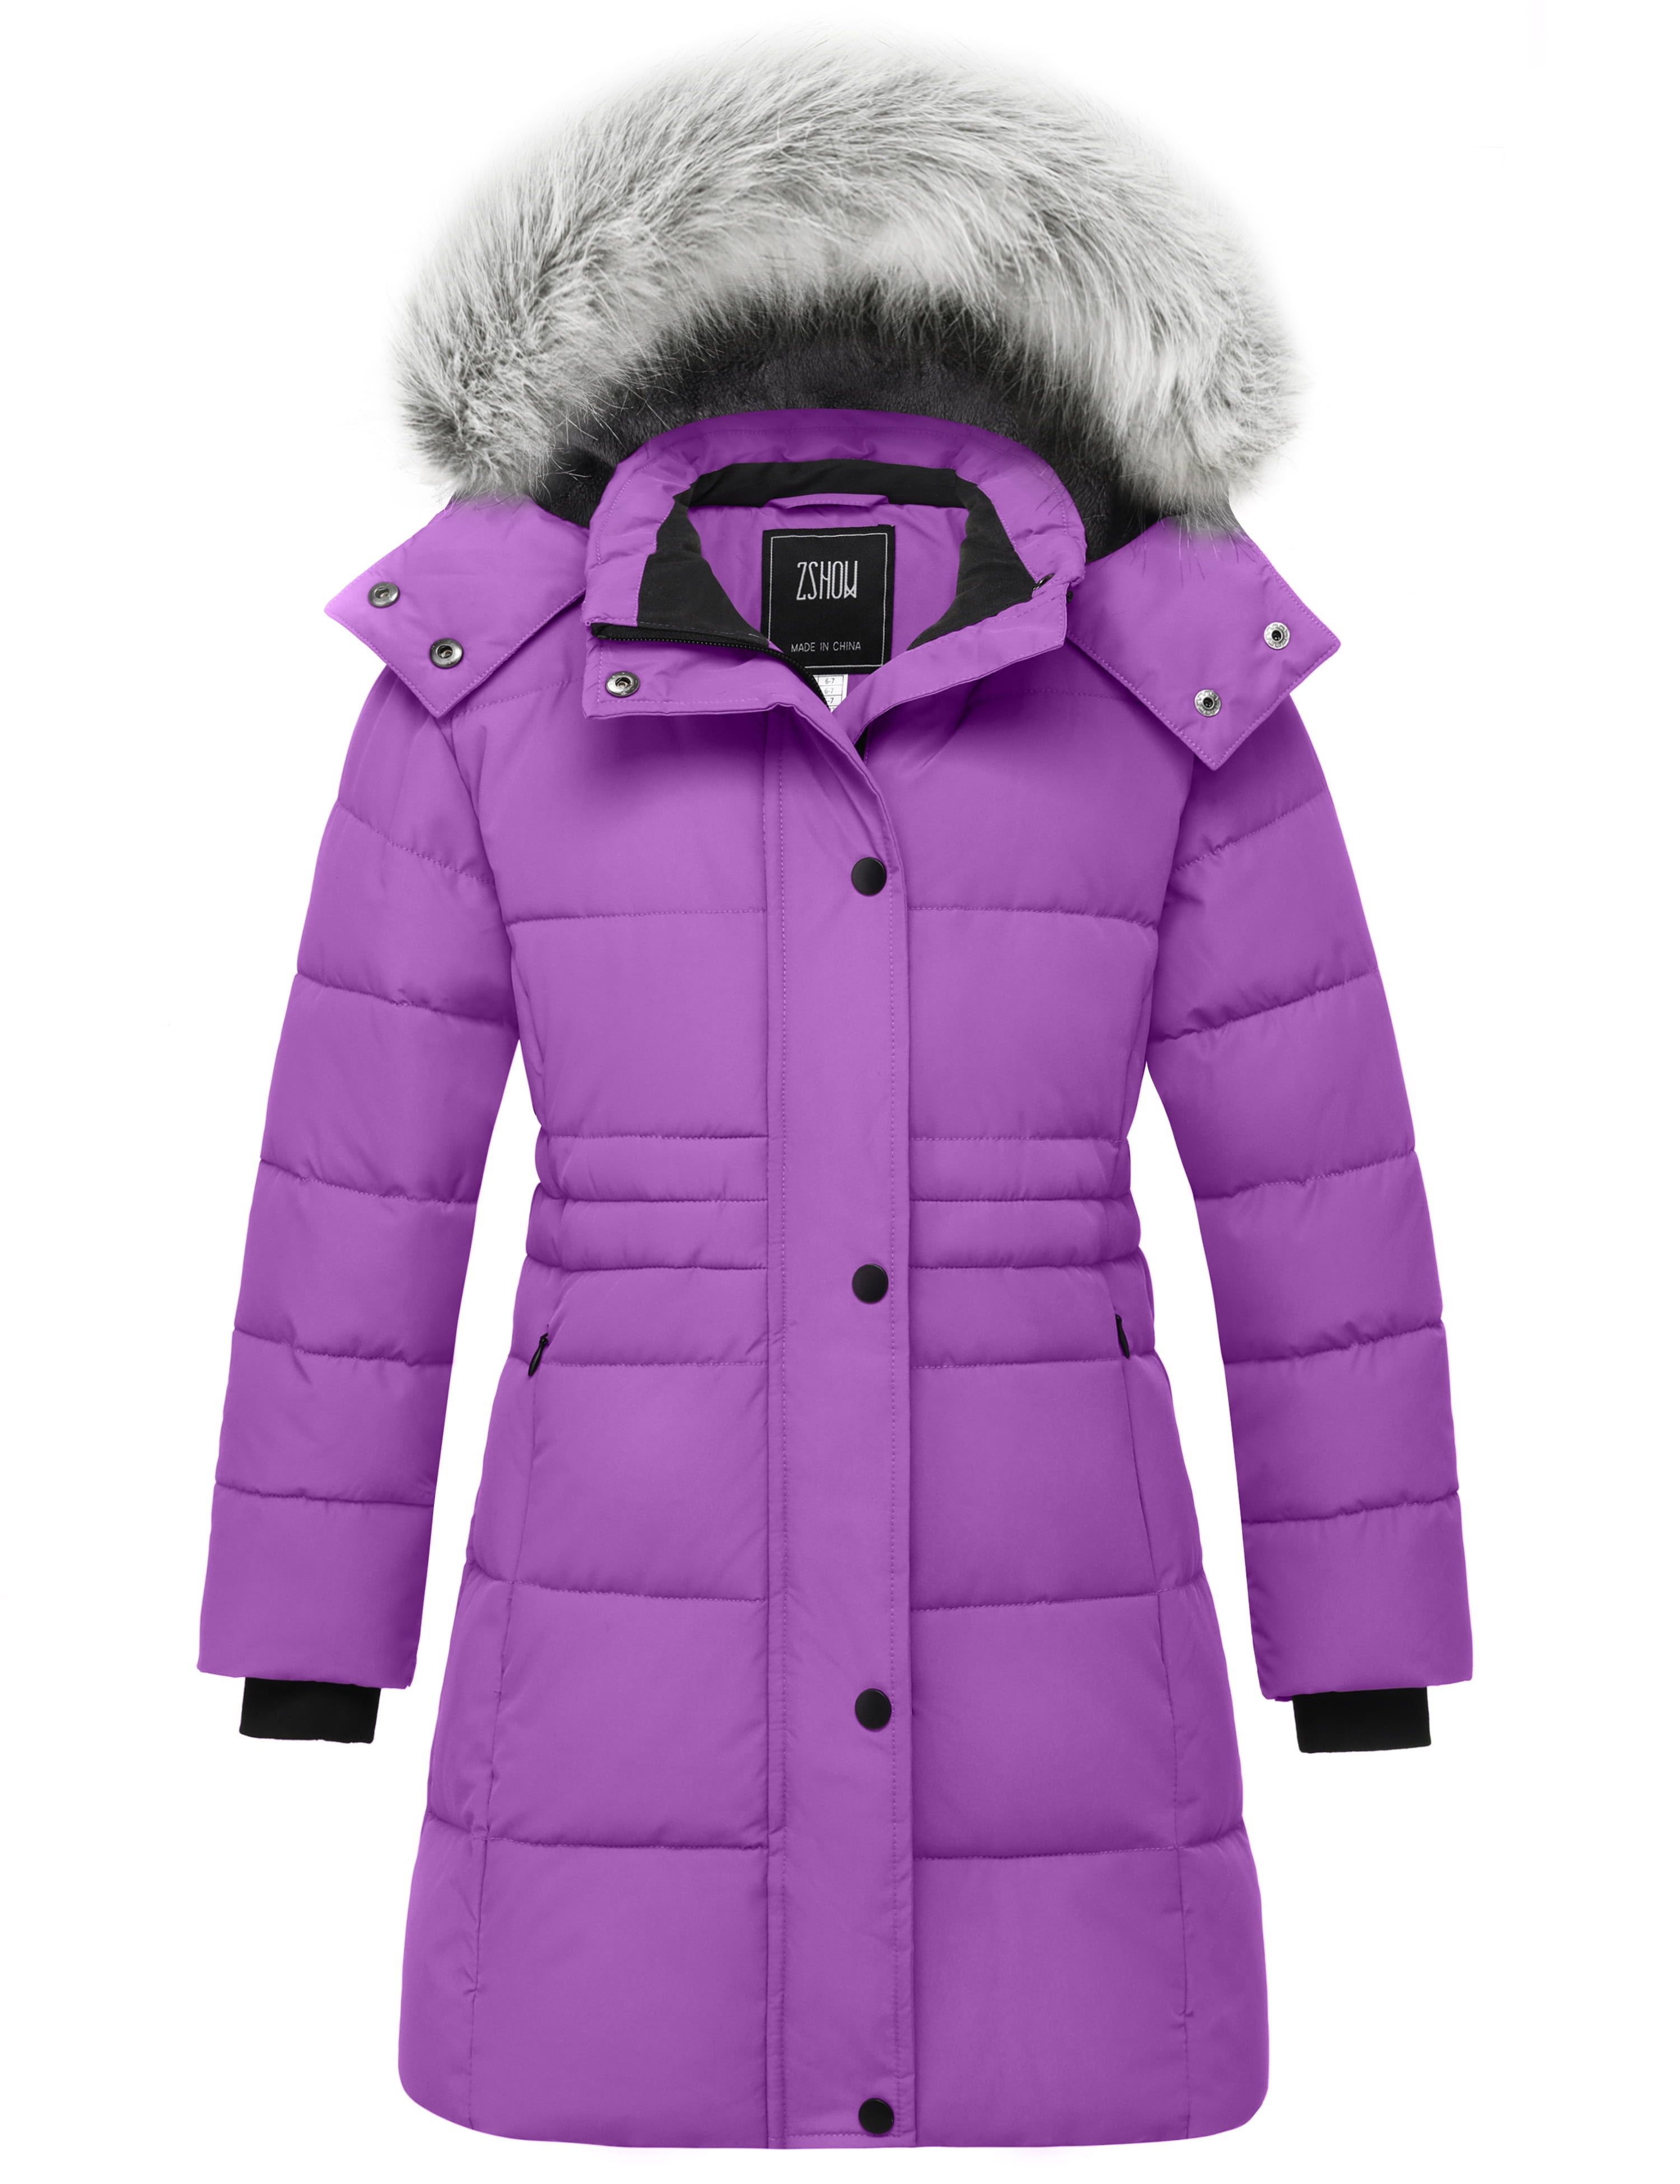 ZSHOW Girls' Puffer Coat Insulated Puffer Jacket Long Hooded Winter ...